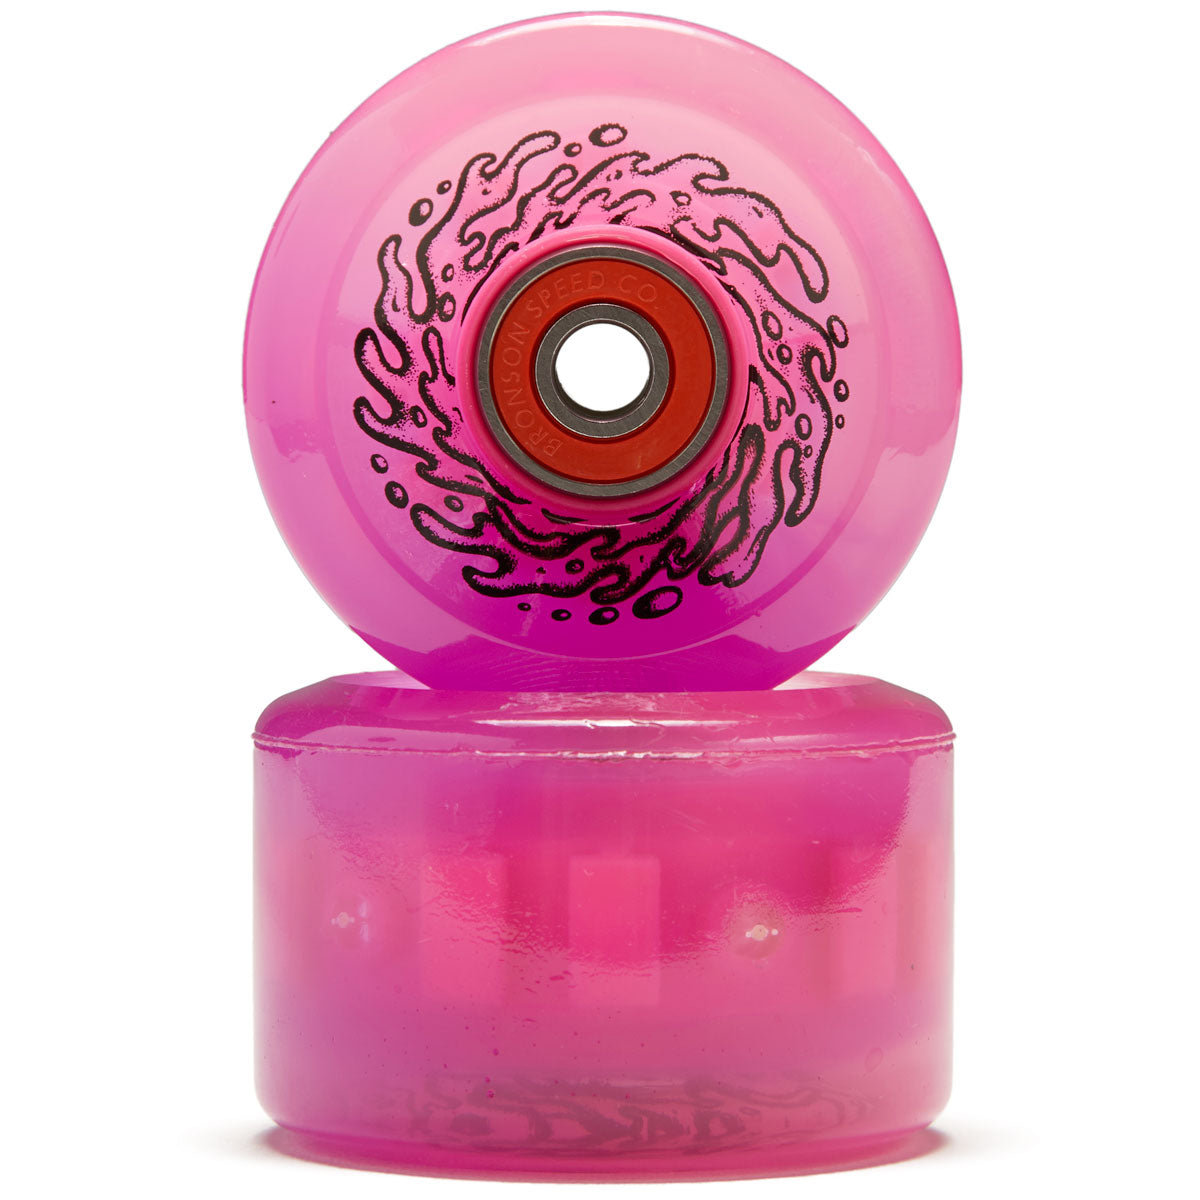 Slime Balls Light Ups OG Slime 78a Skateboard Wheels - Pink/Purple - 60mm image 2